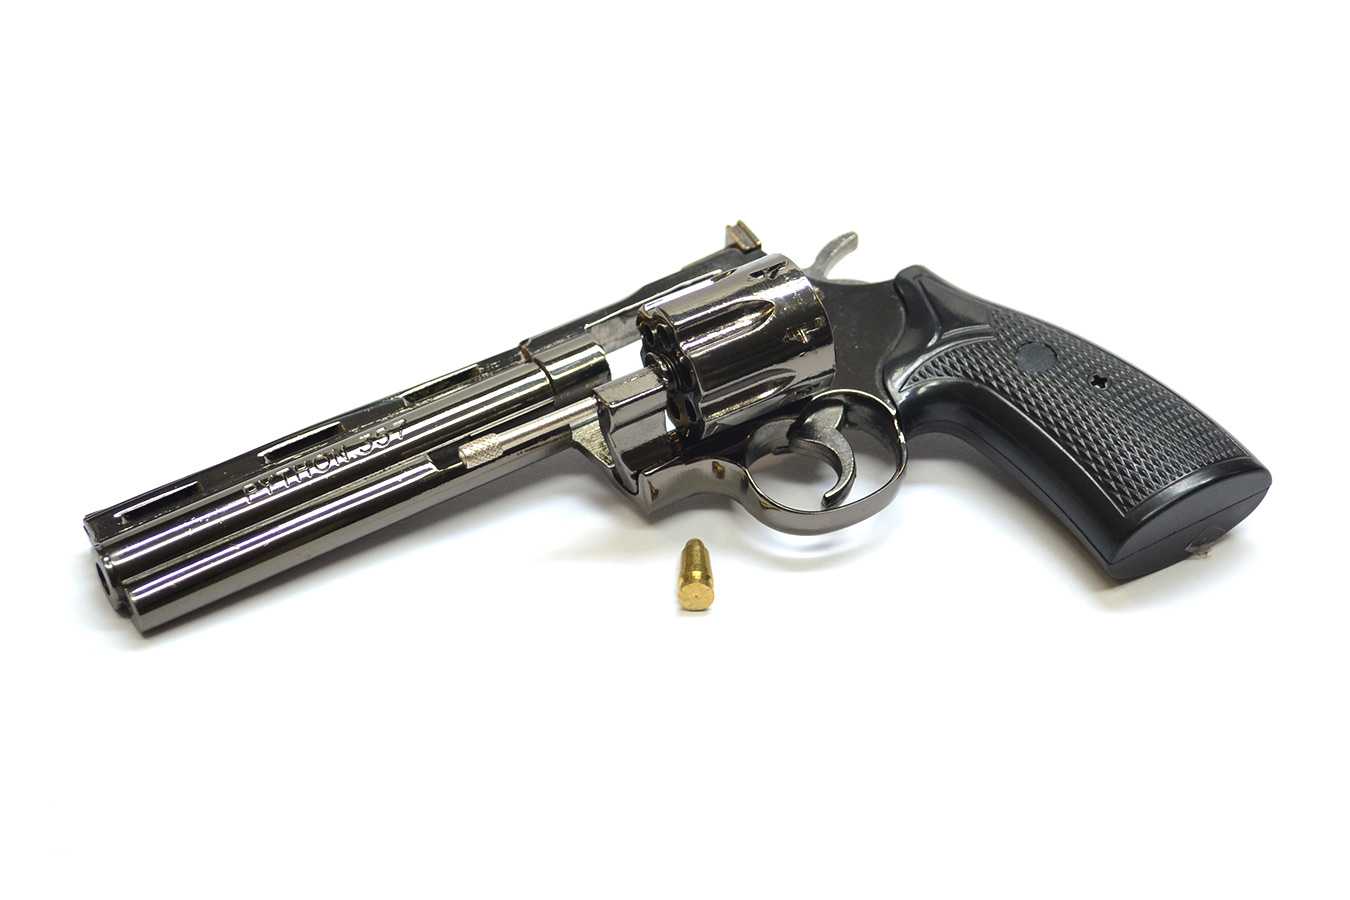 Макет револьвера Colt Python с 152 мм стволом в масштабе 1:2